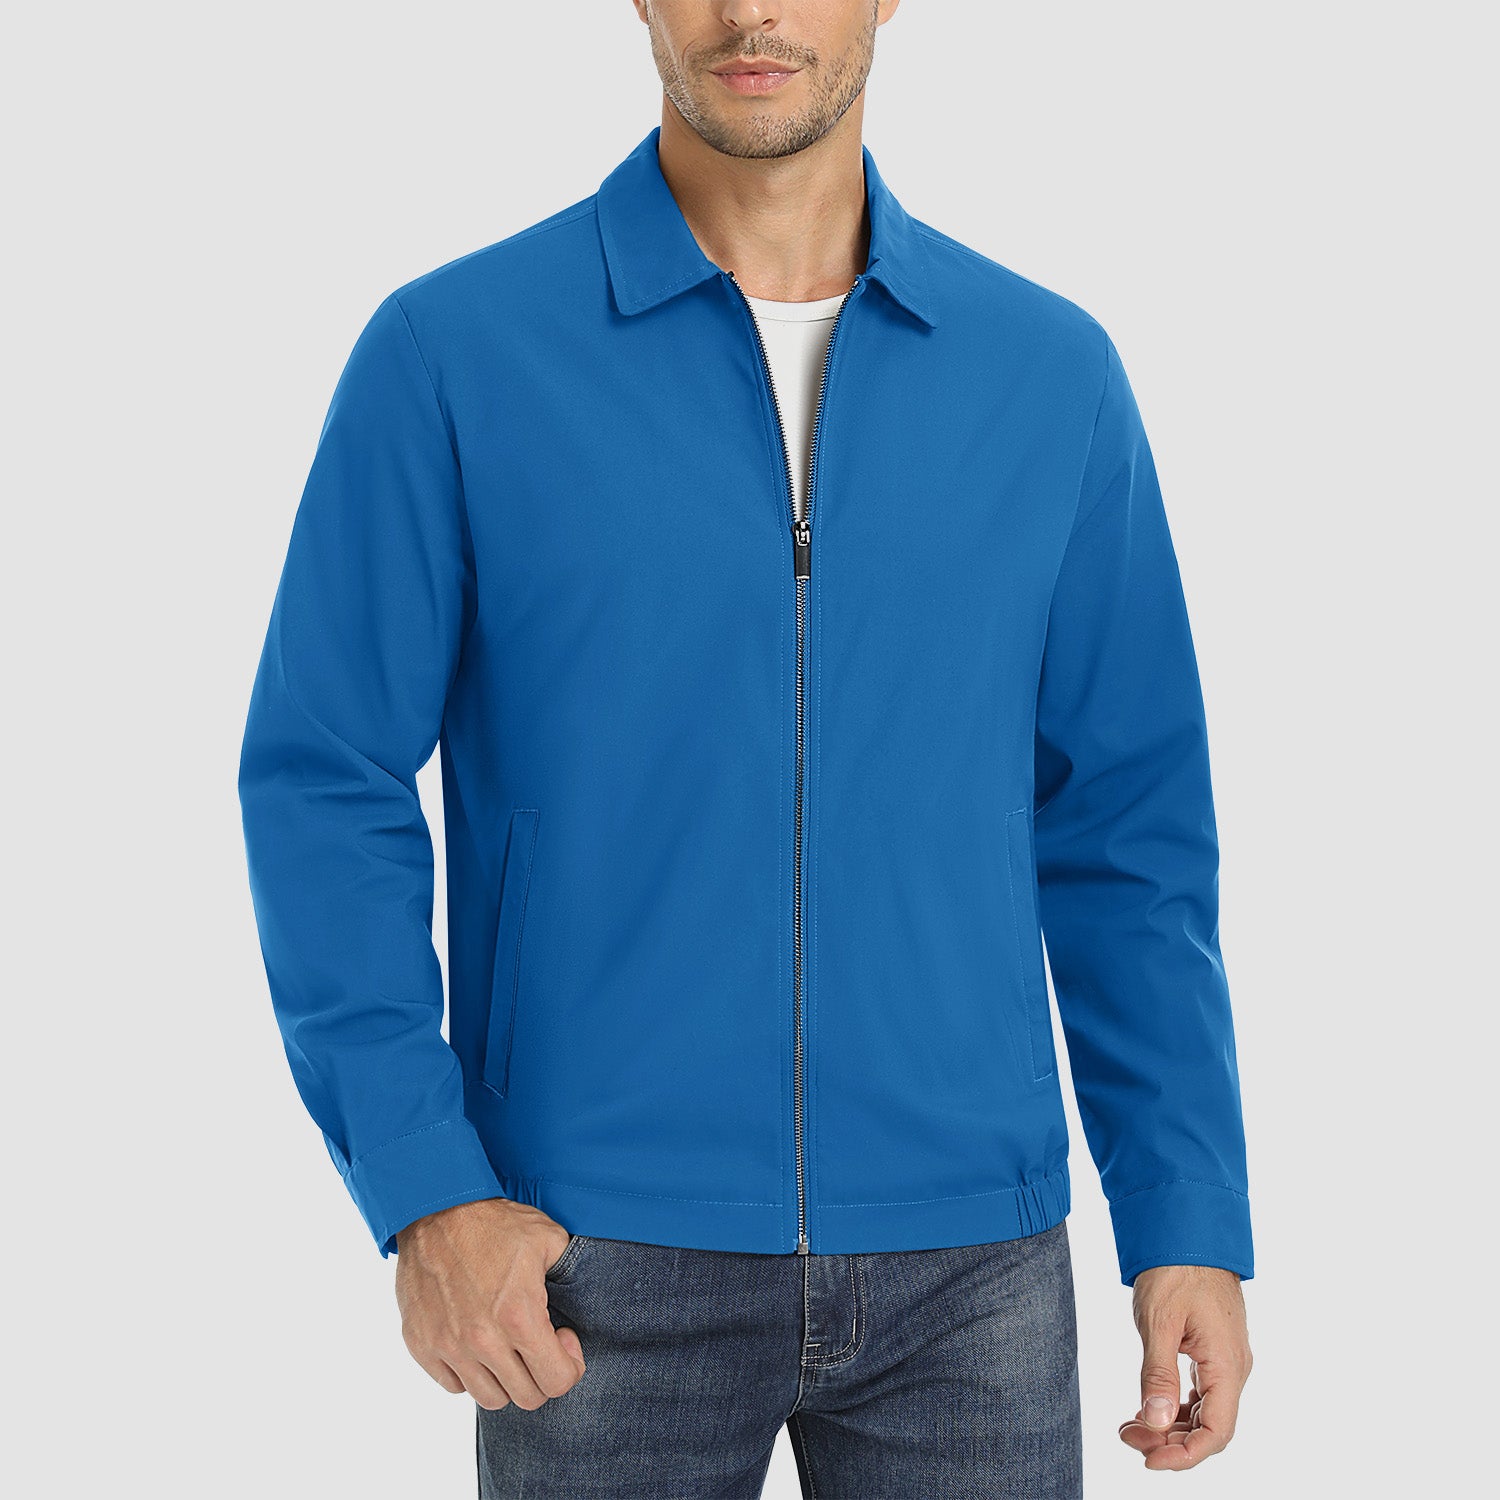 Men's lightweight blue jacket